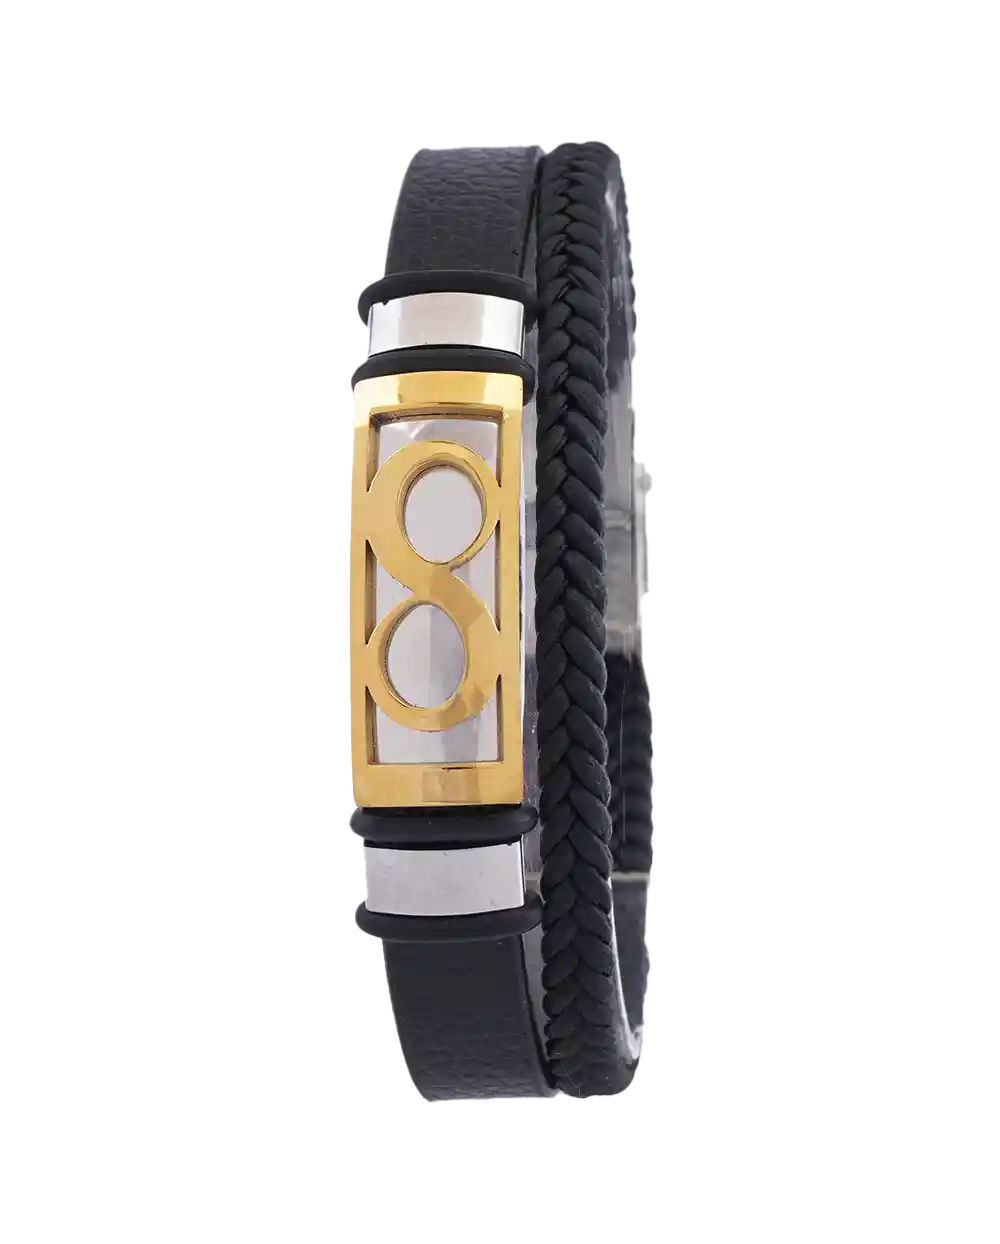 خرید دستبند چرمی مردانه طرح بی نهایت مدل 1619 با بهترین قیمت به همراه ارسال رایگان و جعبه ی شیک | دستبند مردانه شیک و جدید